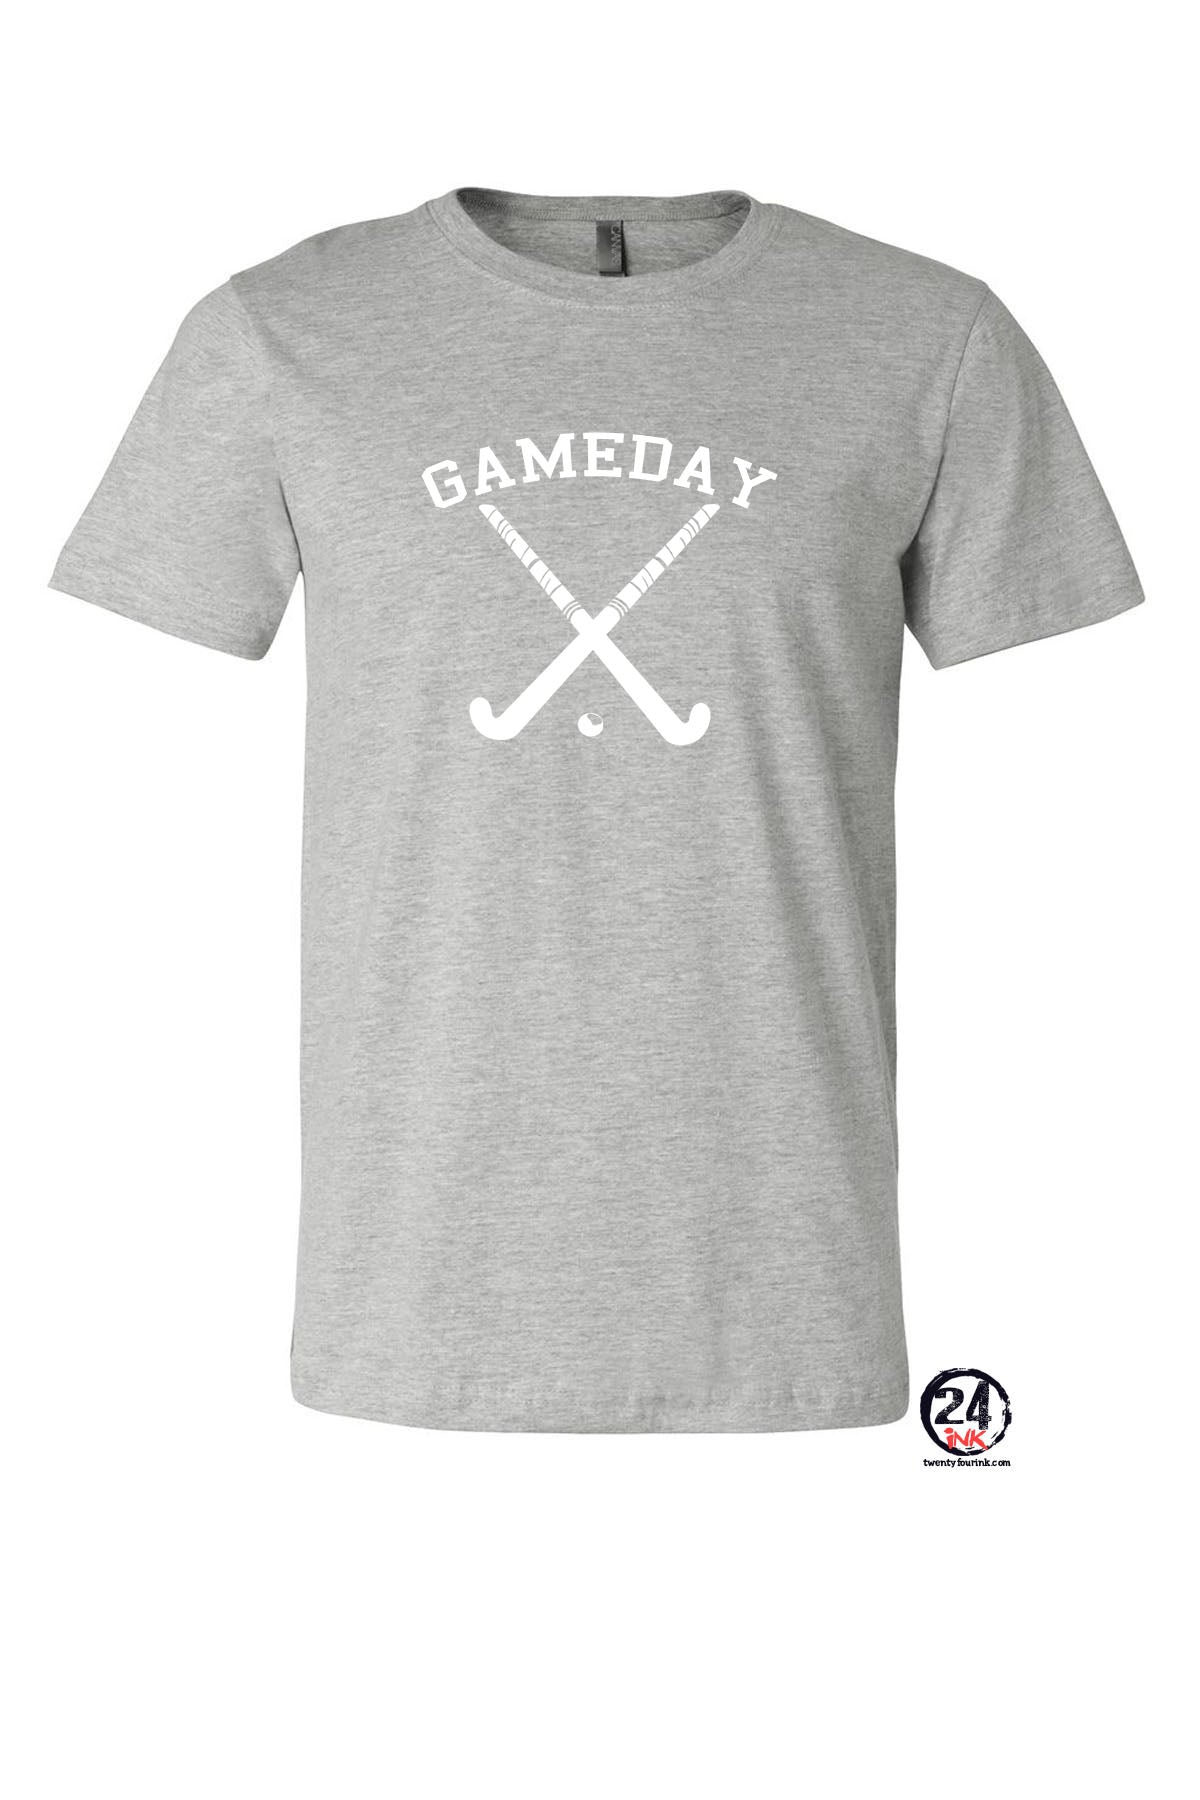 Green Hills Field Hockey Design 3 T-Shirt